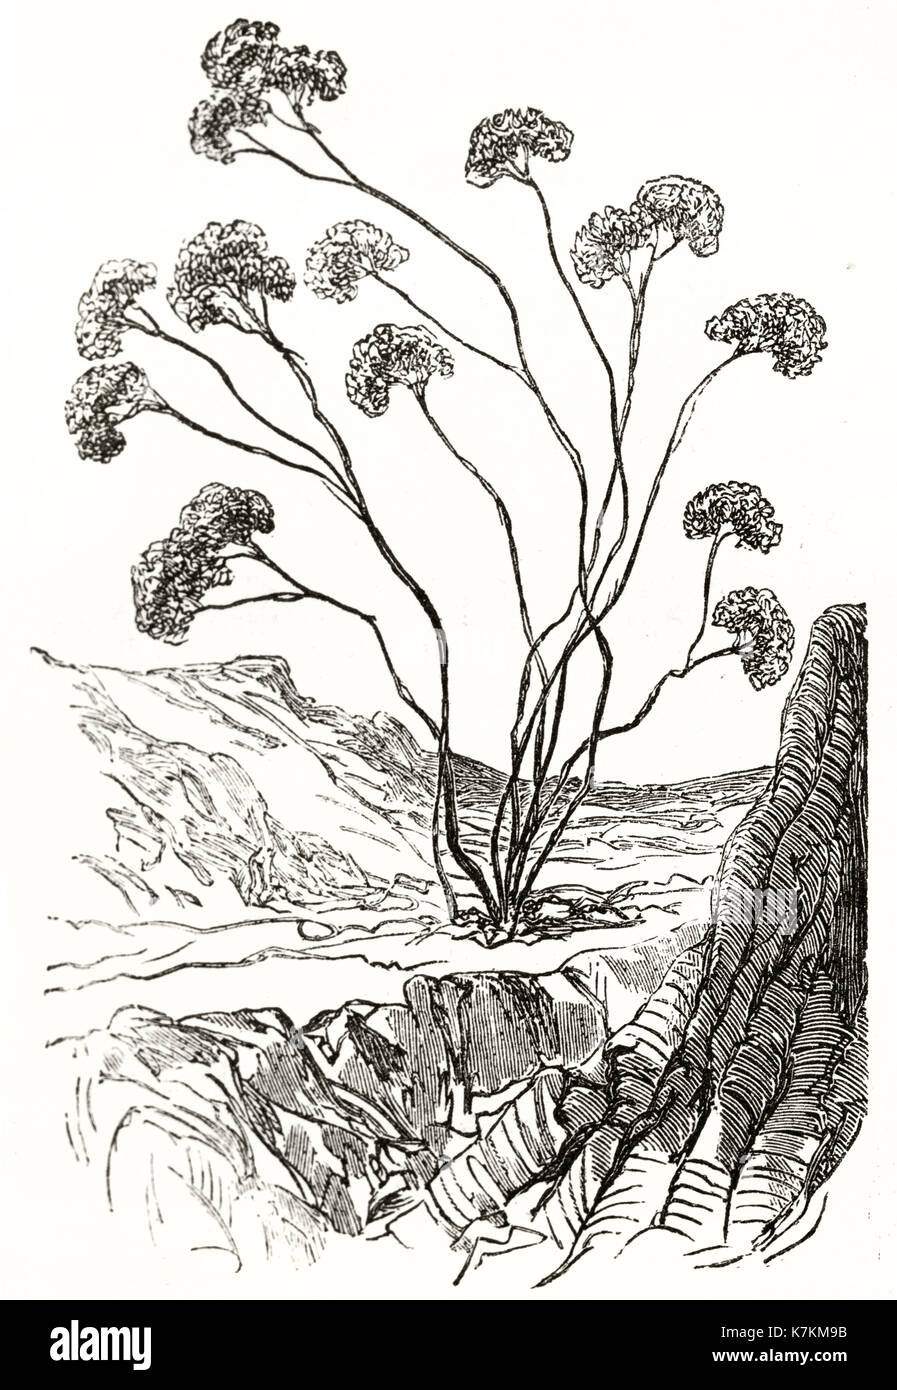 Vieille illustration d'Heliotropium arborescens. Par Riou, publ. sur le Tour du Monde, Paris, 1862 Banque D'Images